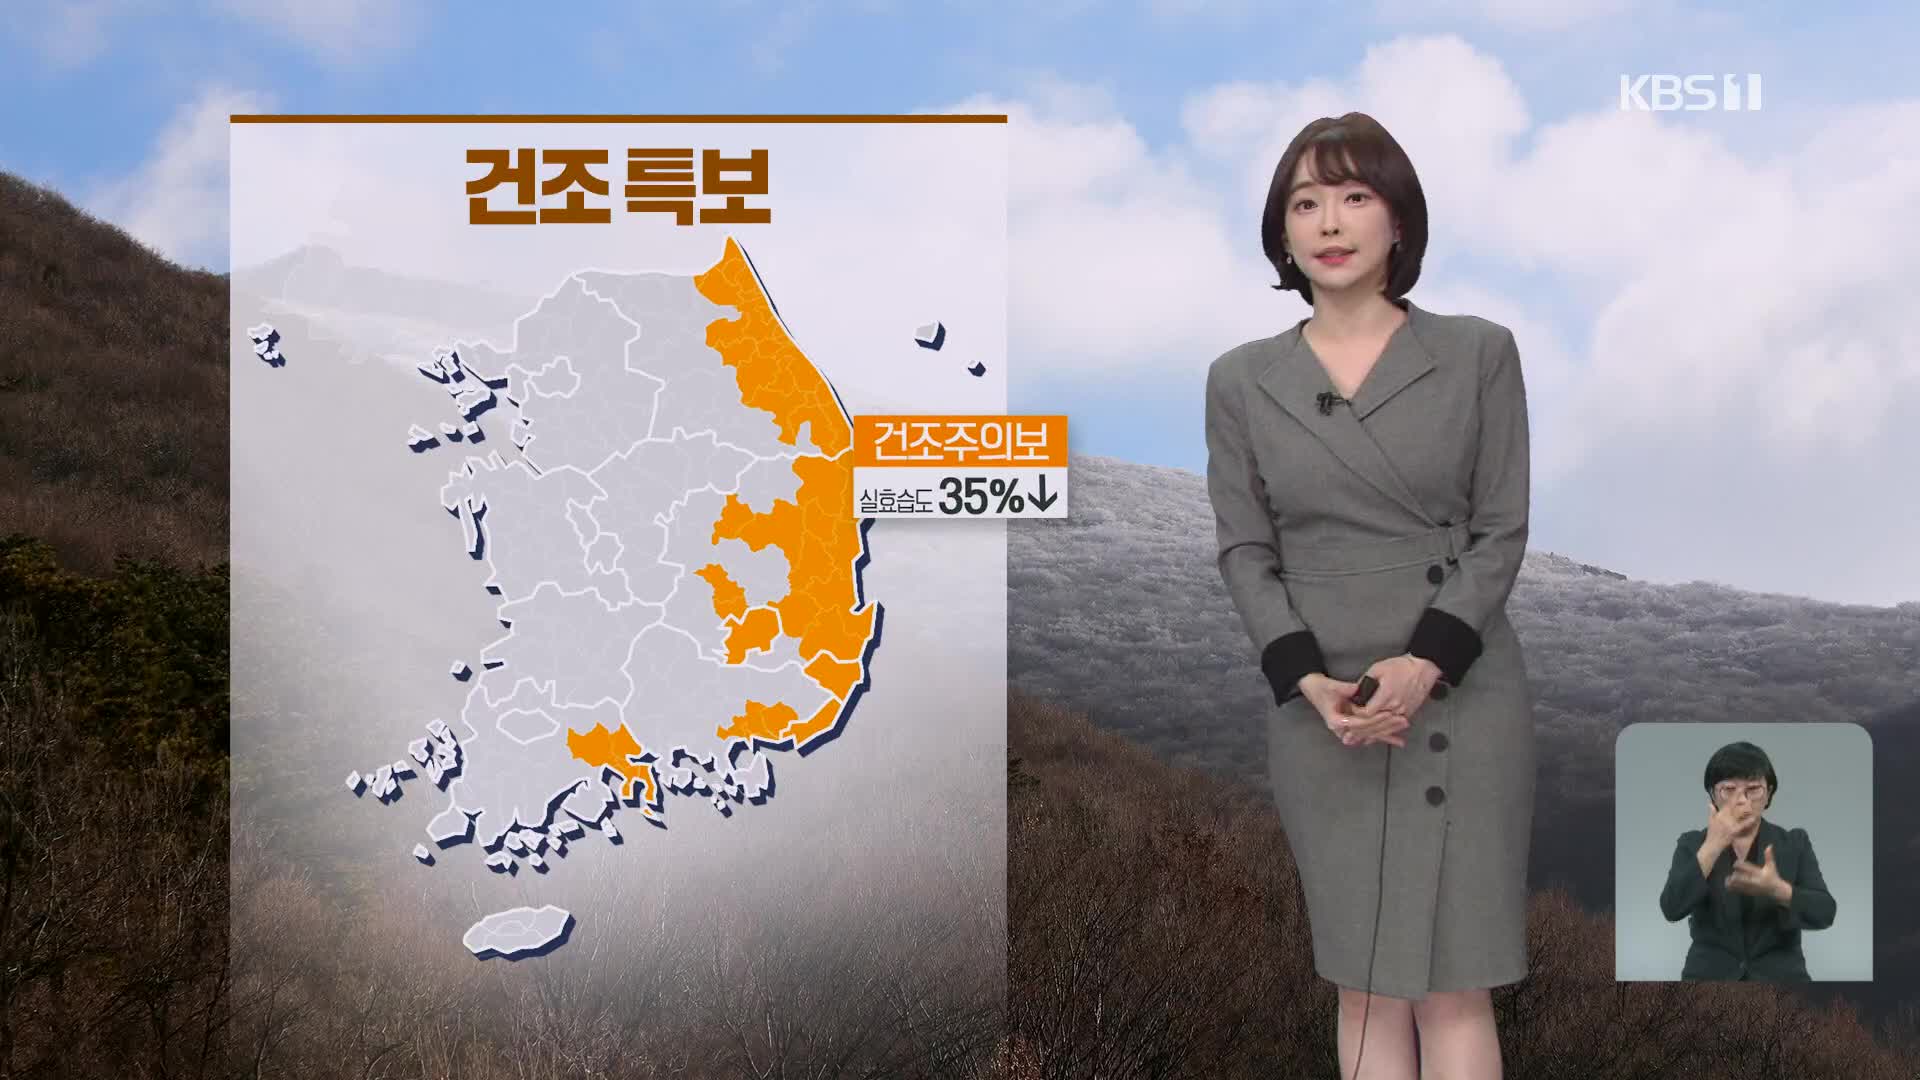 [날씨] 내일 아침 ‘반짝 추위’…낮부터 서울 4도 등 전국 영상권